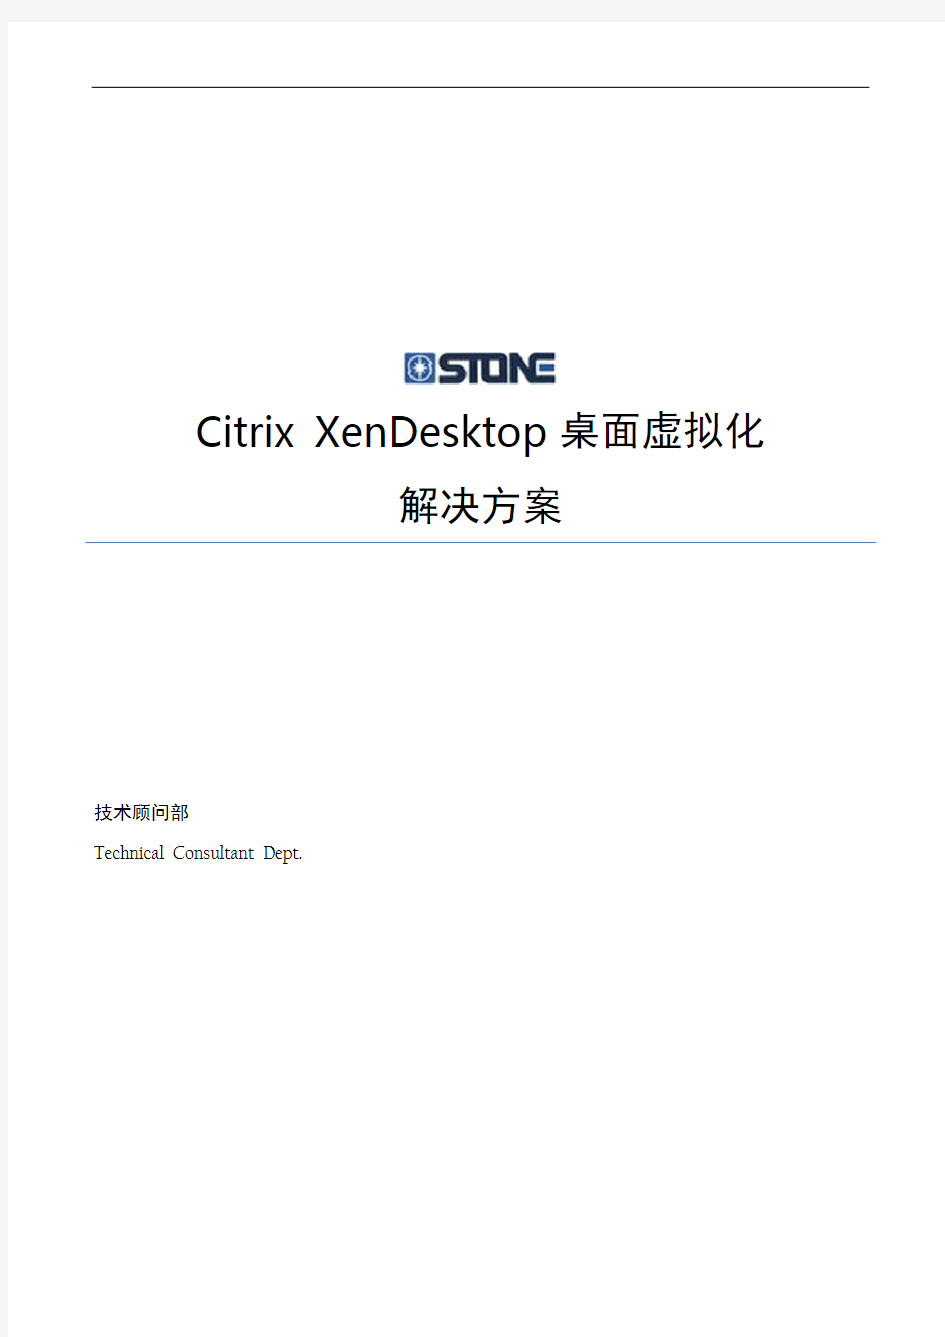 Citrix XenDesktop桌面虚拟化解决方案